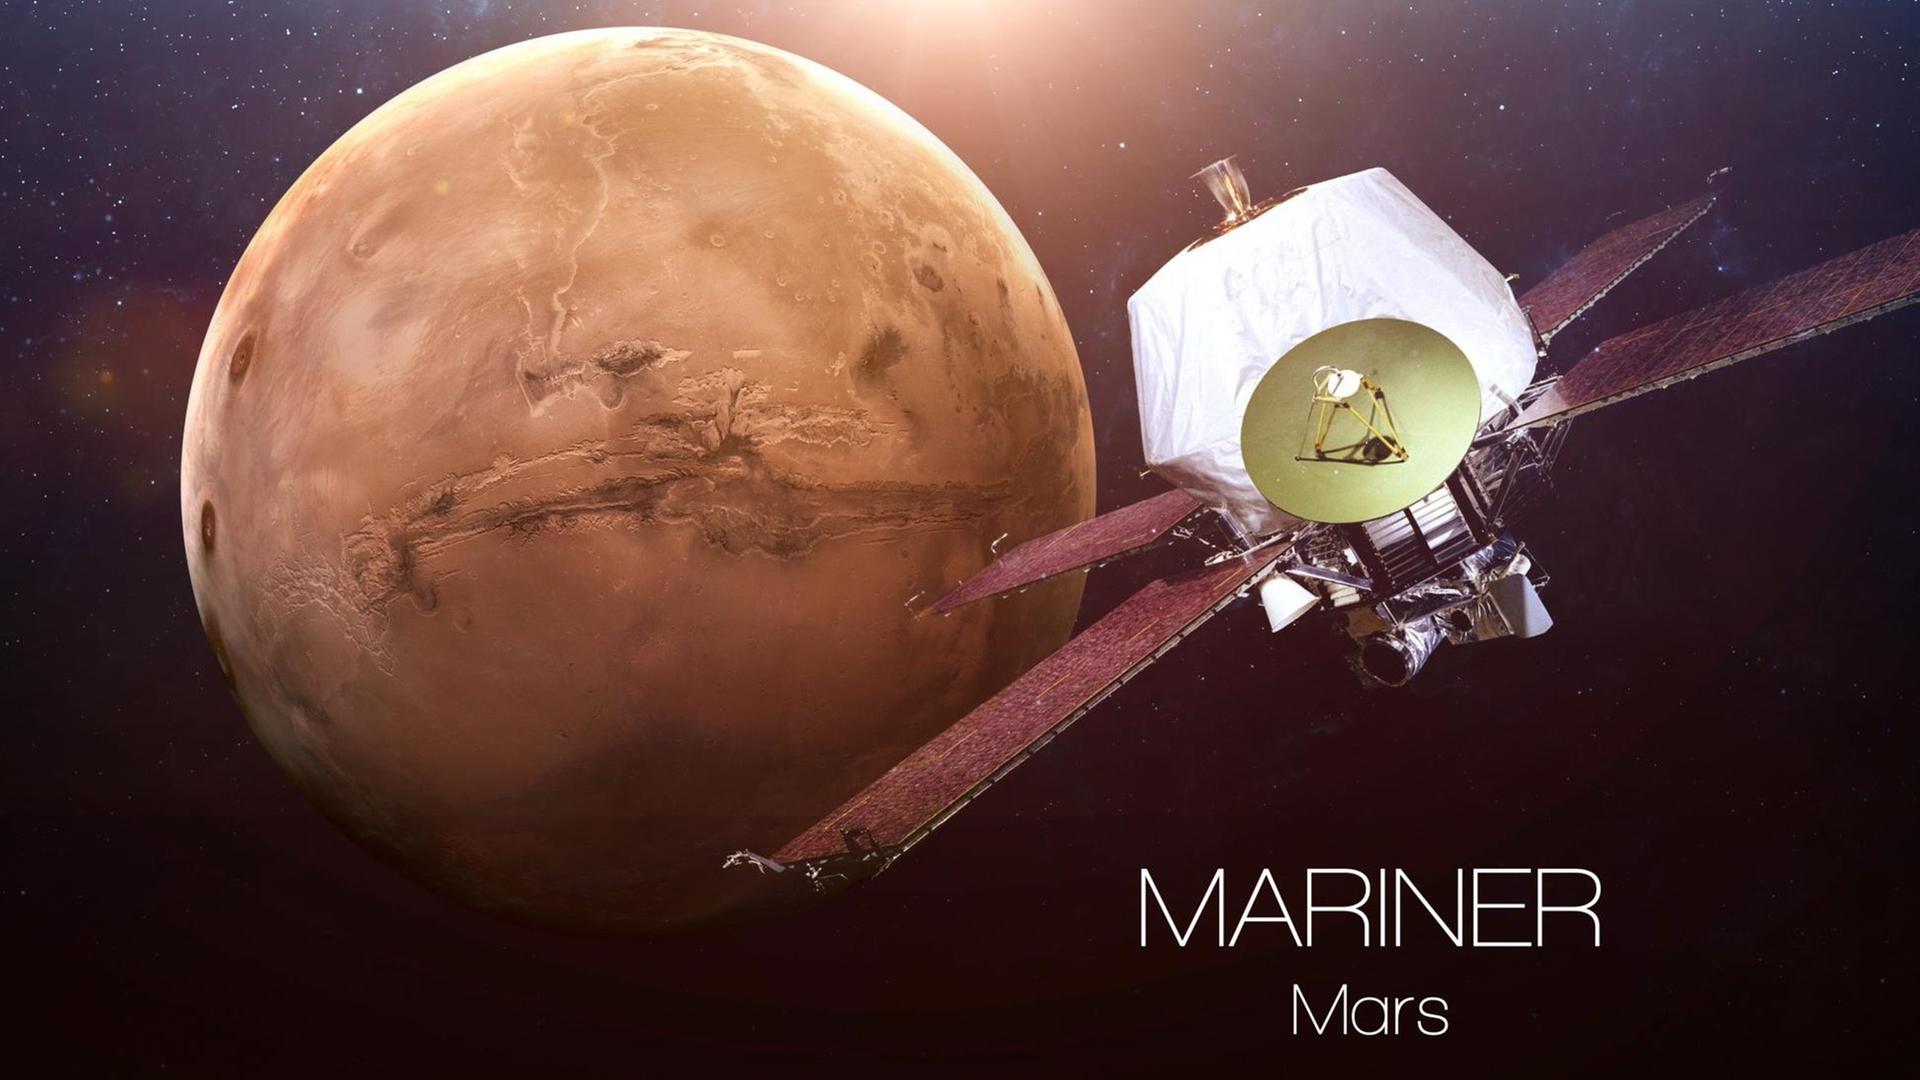 Eine Grafik auf Grundlage von Nasa-Bildern von zeigt eine Mariner- Raumsonde auf den Roten Planten zusteuernd Illustration einer Mariner-Raumsonde nahe dem Mars